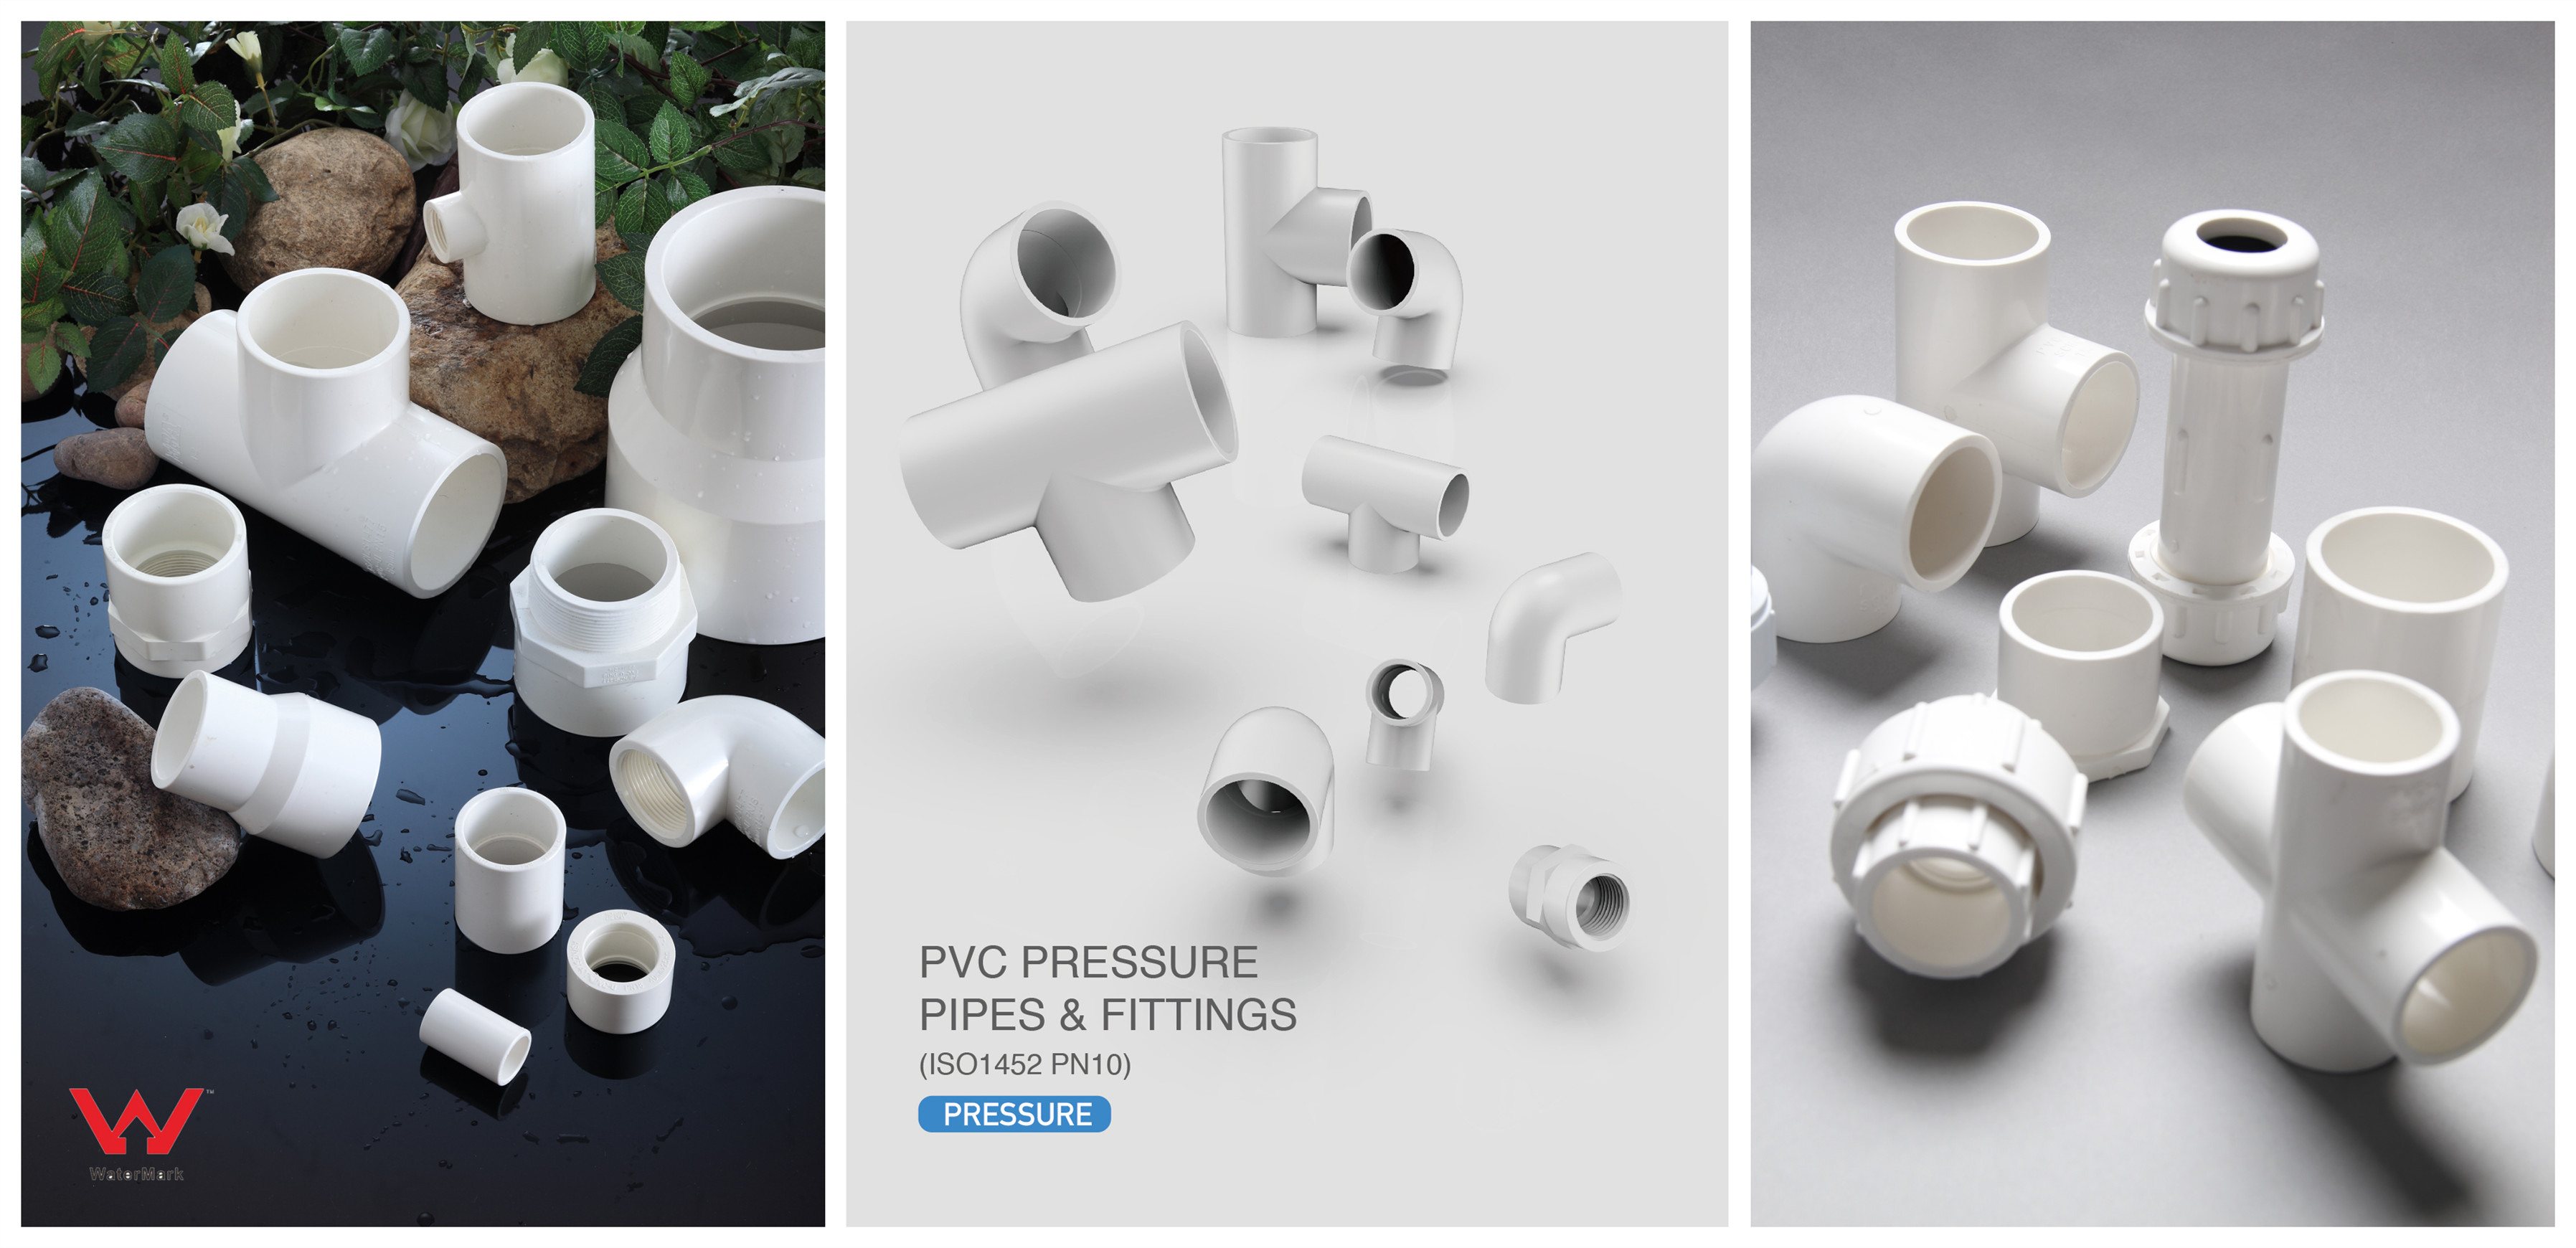 ¿Cuál es la diferencia entre PVC y UPVC?